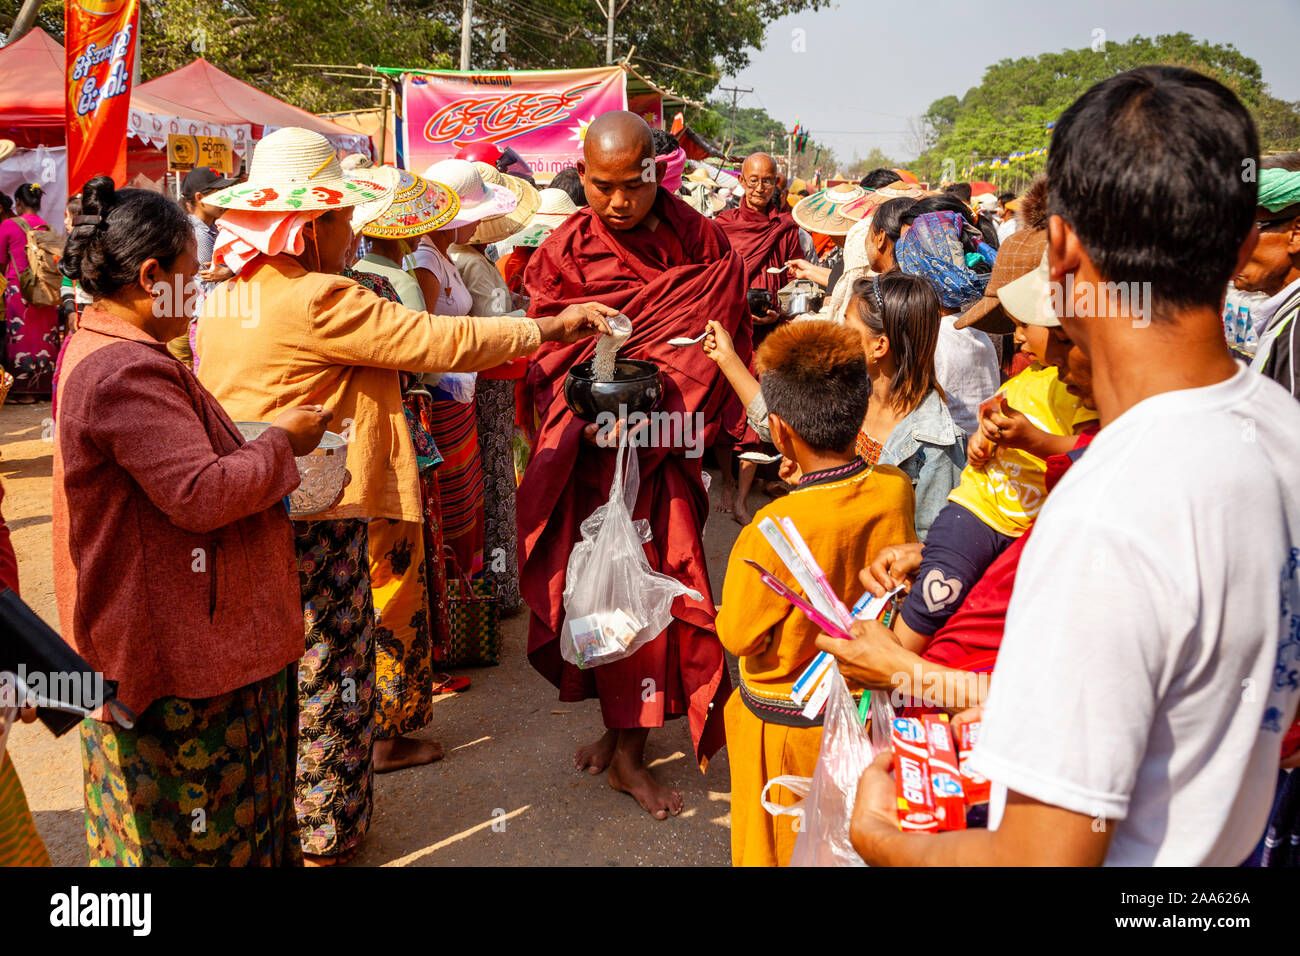 Monks Walk Down The Main Street In Pindaya Seeking Alms During The Pindaya Cave Festival, Pindaya, Shan State, Myanmar. Stock Photo